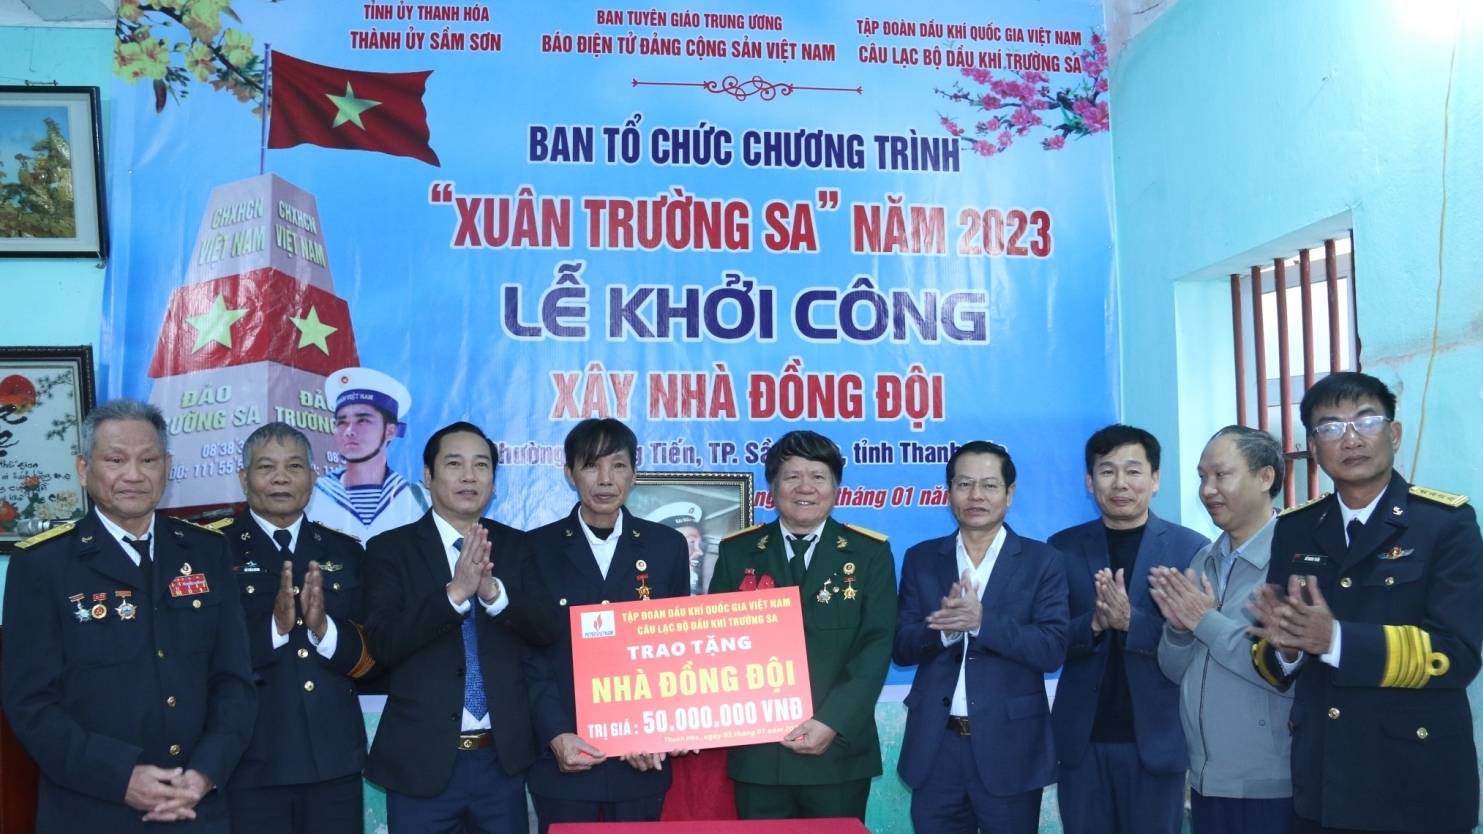 Câu lạc bộ Dầu khí Trường Sa hỗ trợ kinh phí xây dựng "Nhà đồng đội" tại Thanh Hoá